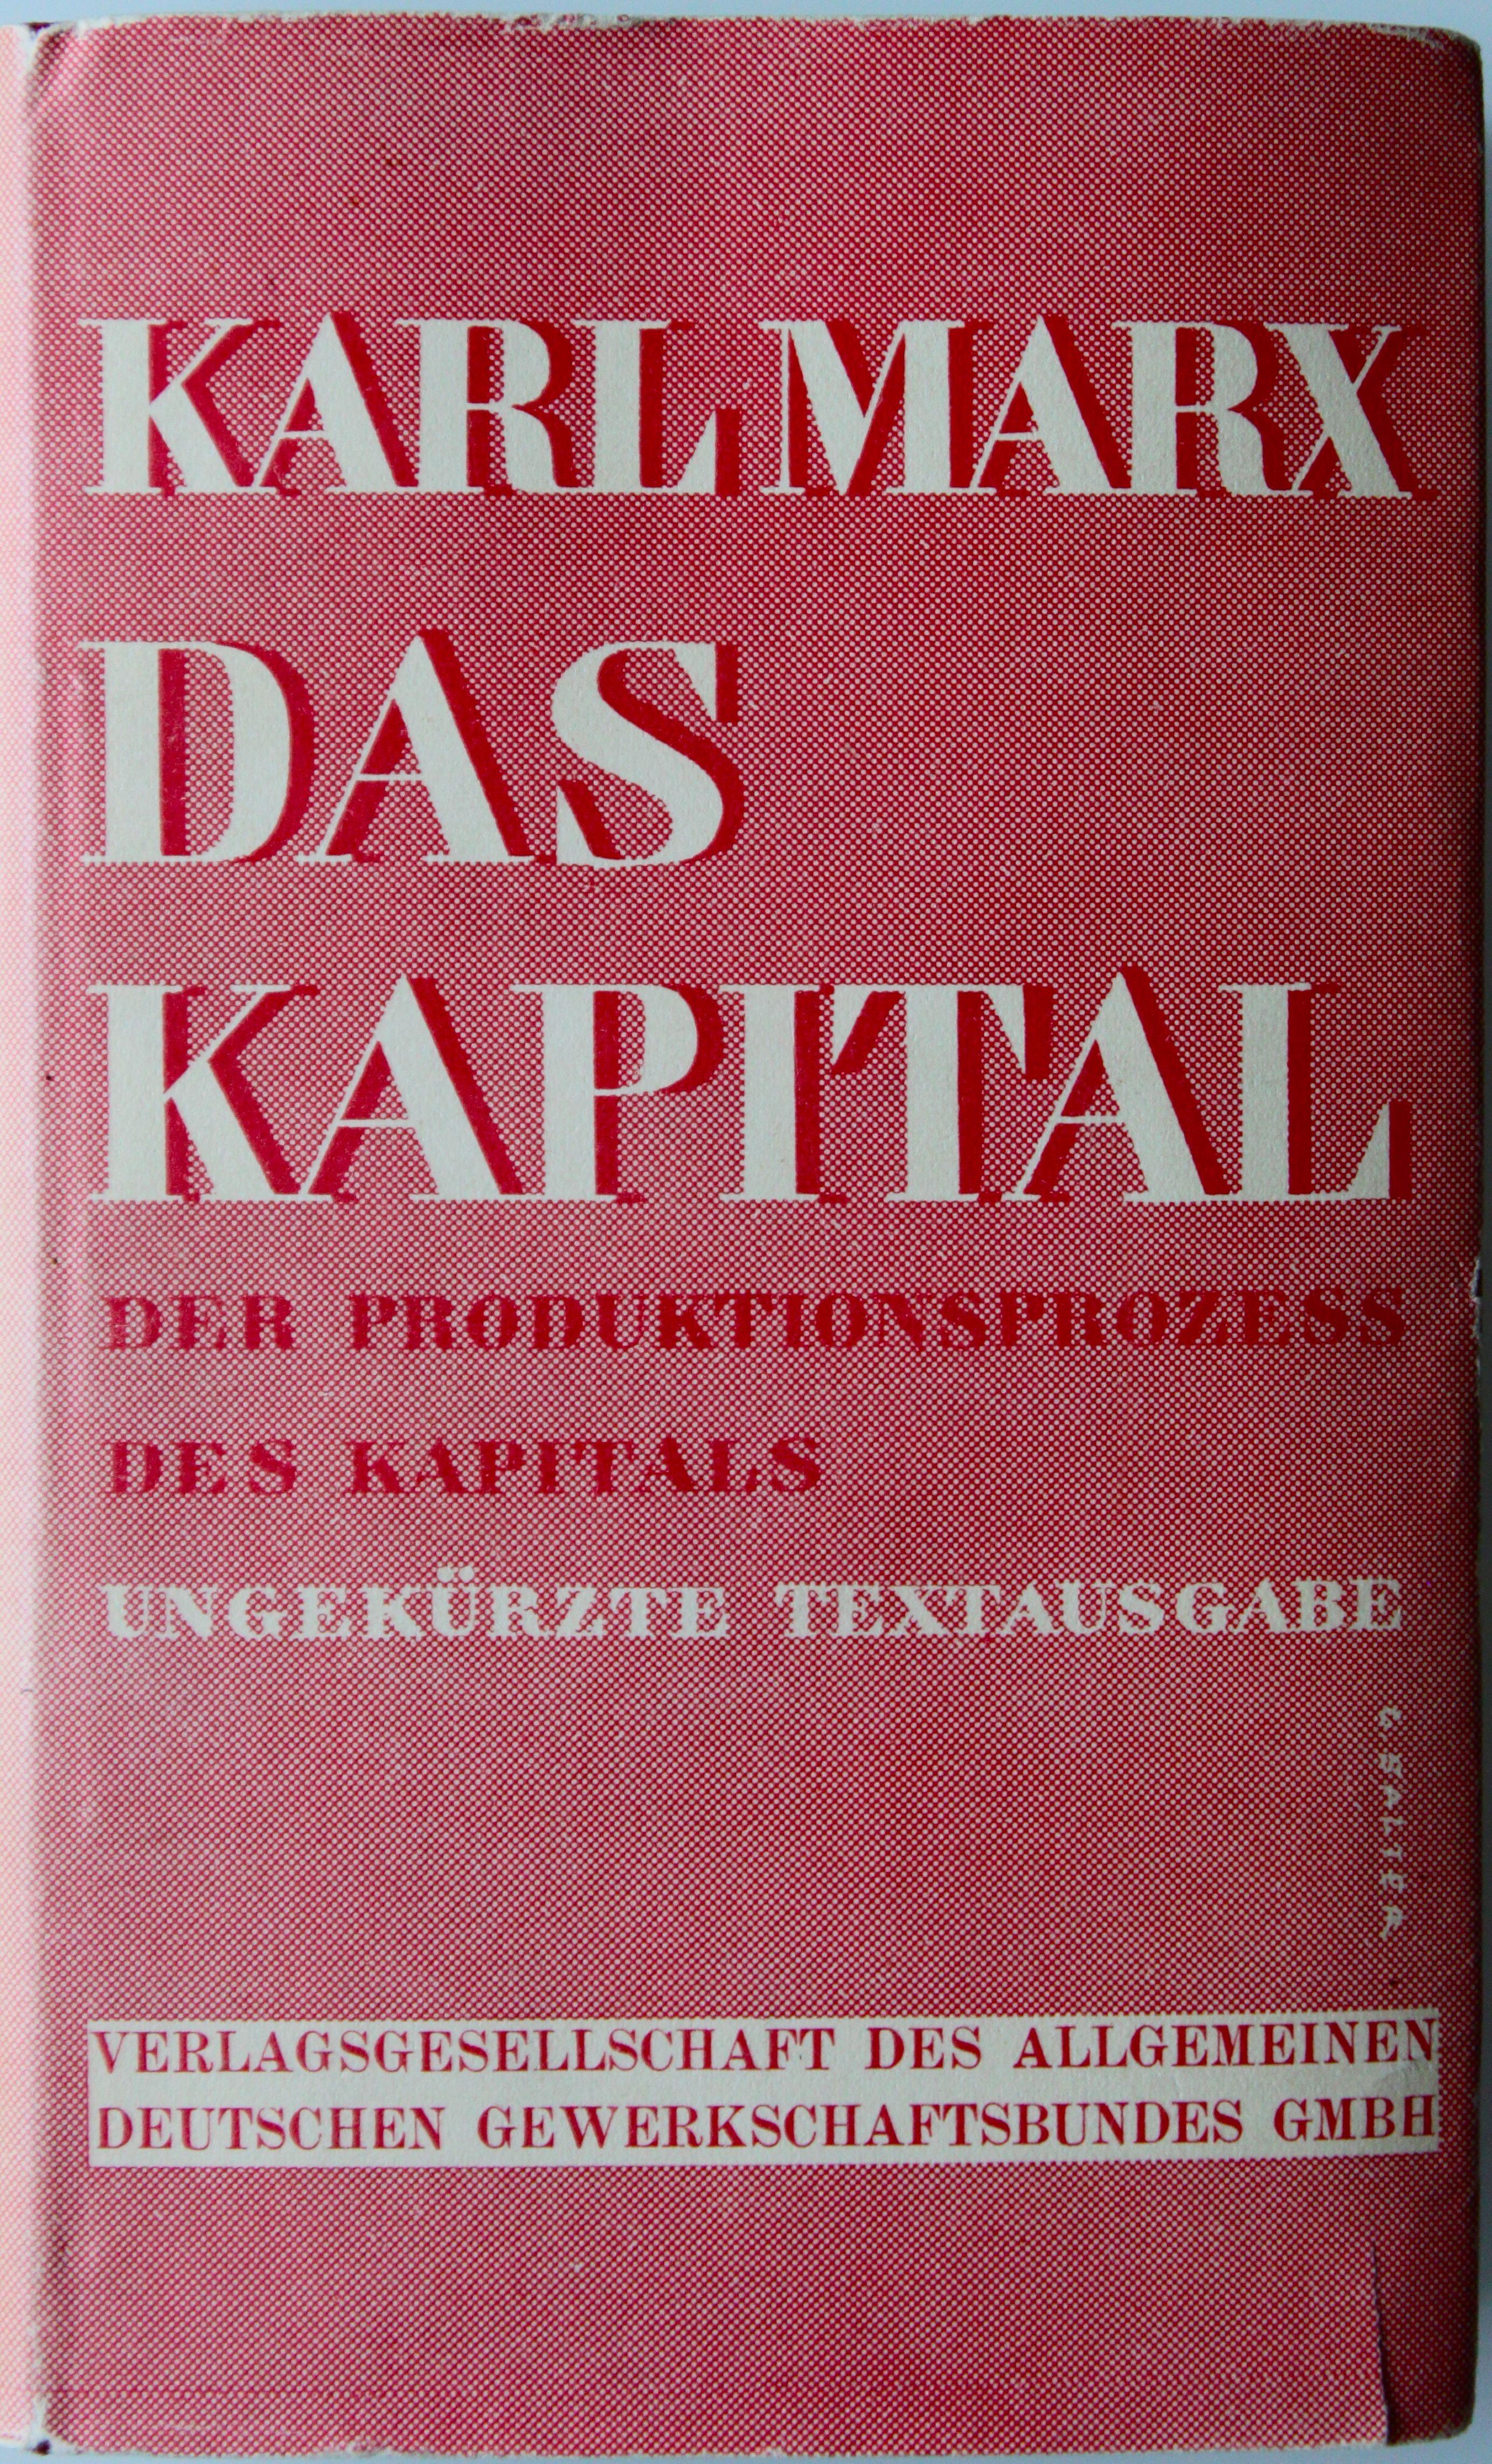 Karl Marx, Das Kapital, 1932